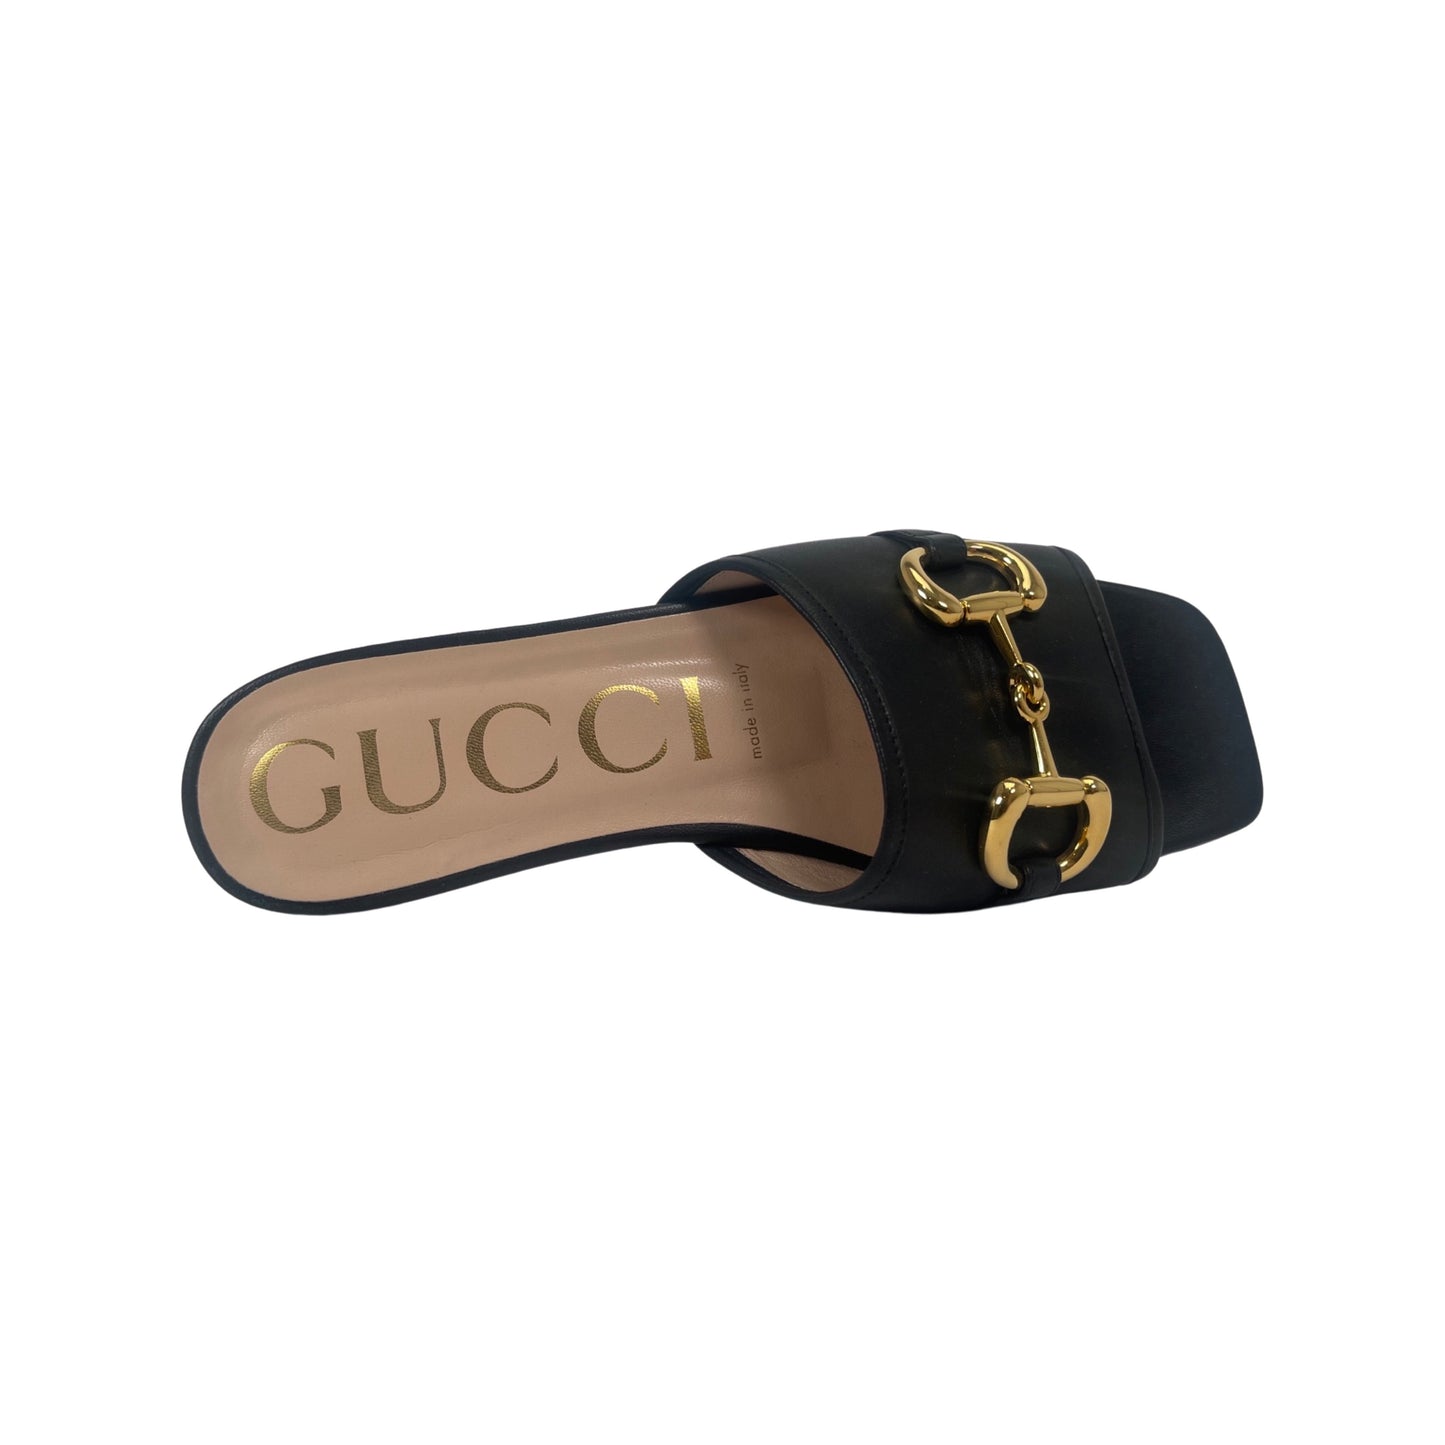 Gucci Horsebit Accent Leather Slides (Size 37)